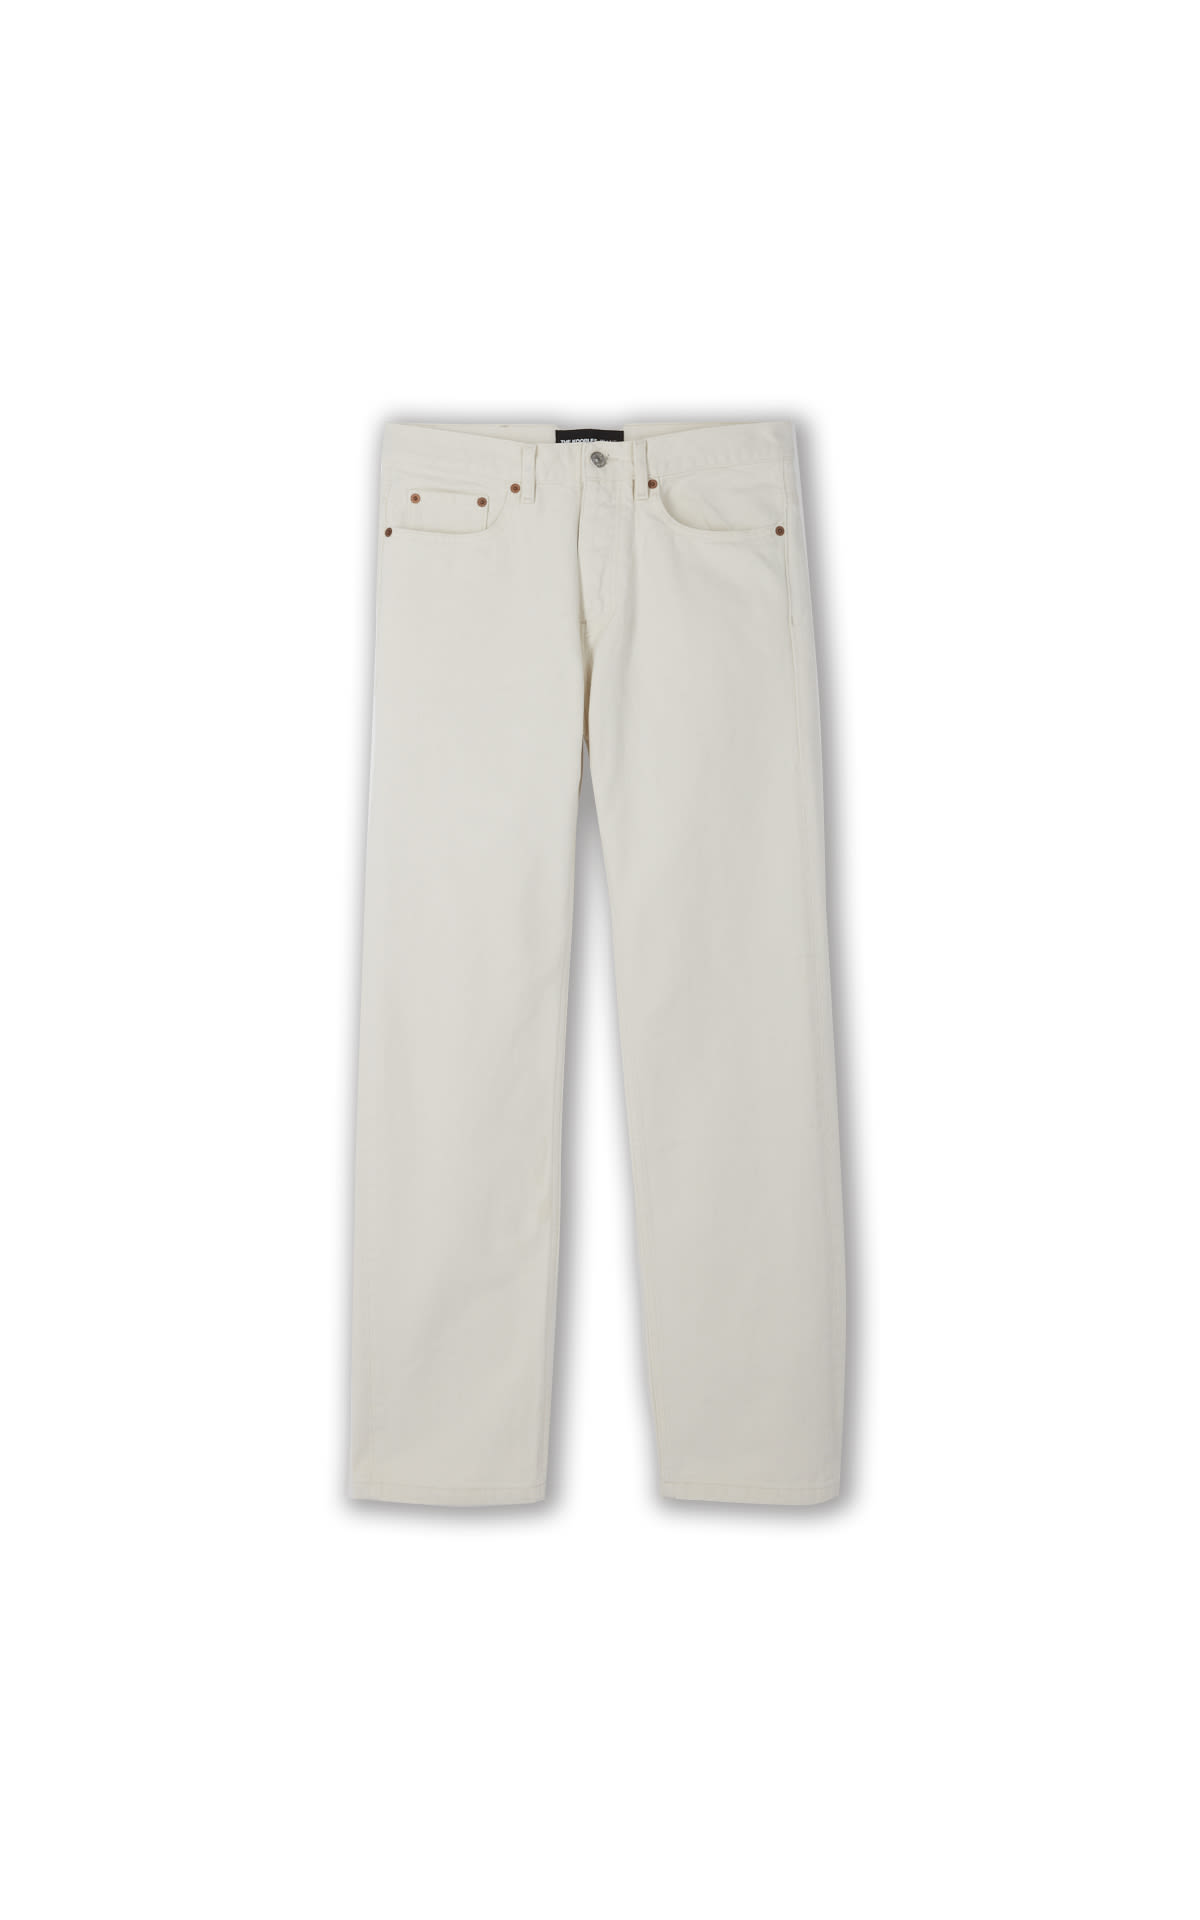 Linen men's trousers